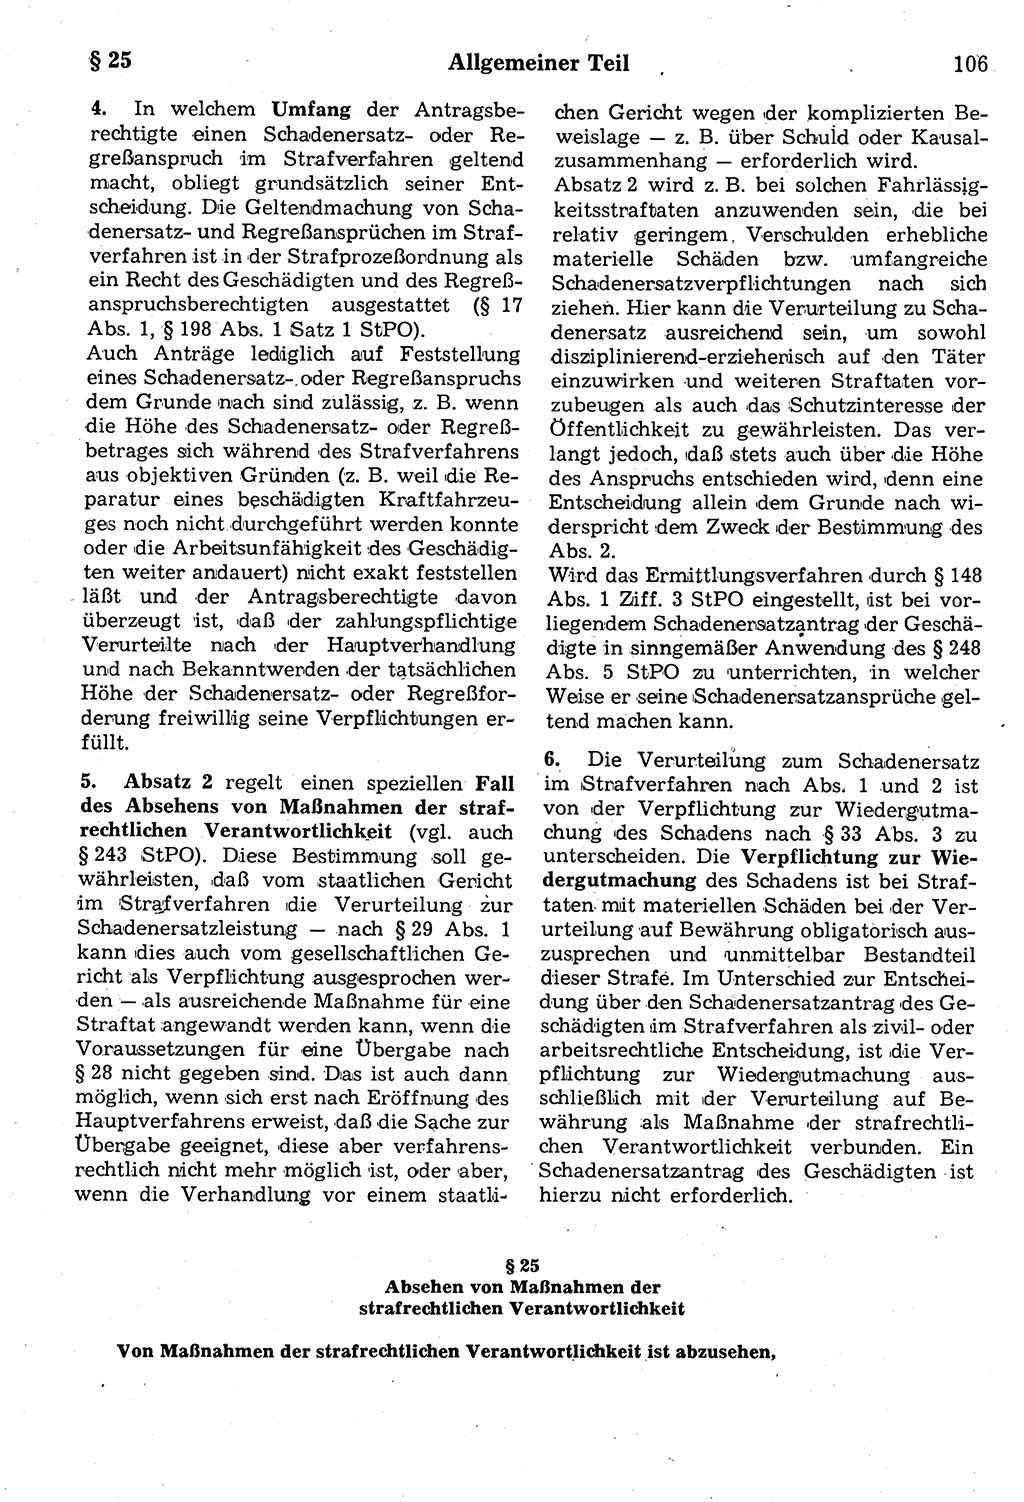 Strafrecht der Deutschen Demokratischen Republik (DDR), Kommentar zum Strafgesetzbuch (StGB) 1987, Seite 106 (Strafr. DDR Komm. StGB 1987, S. 106)